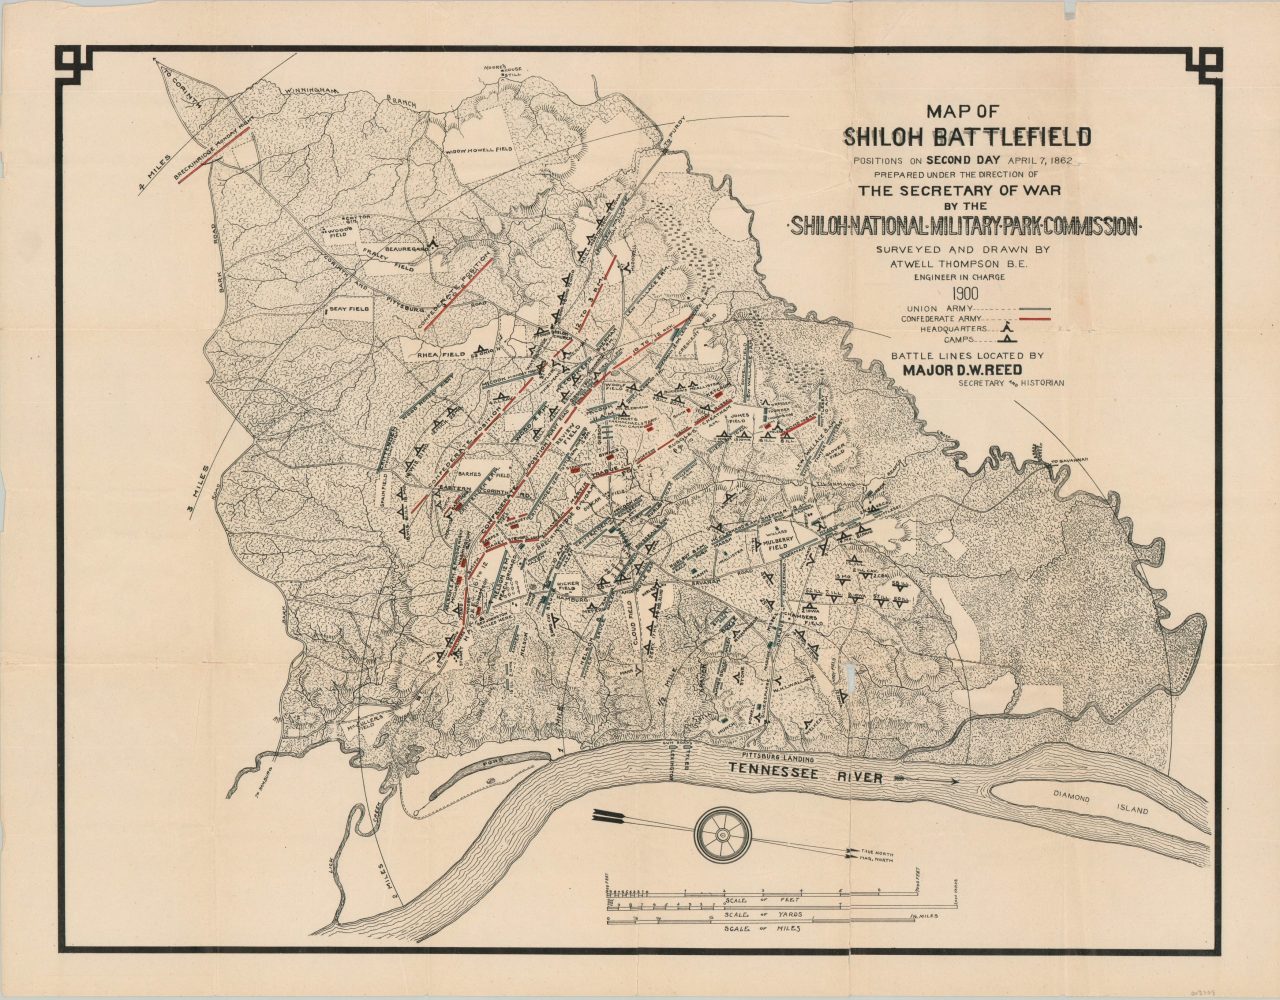 shiloh battlefield tour map